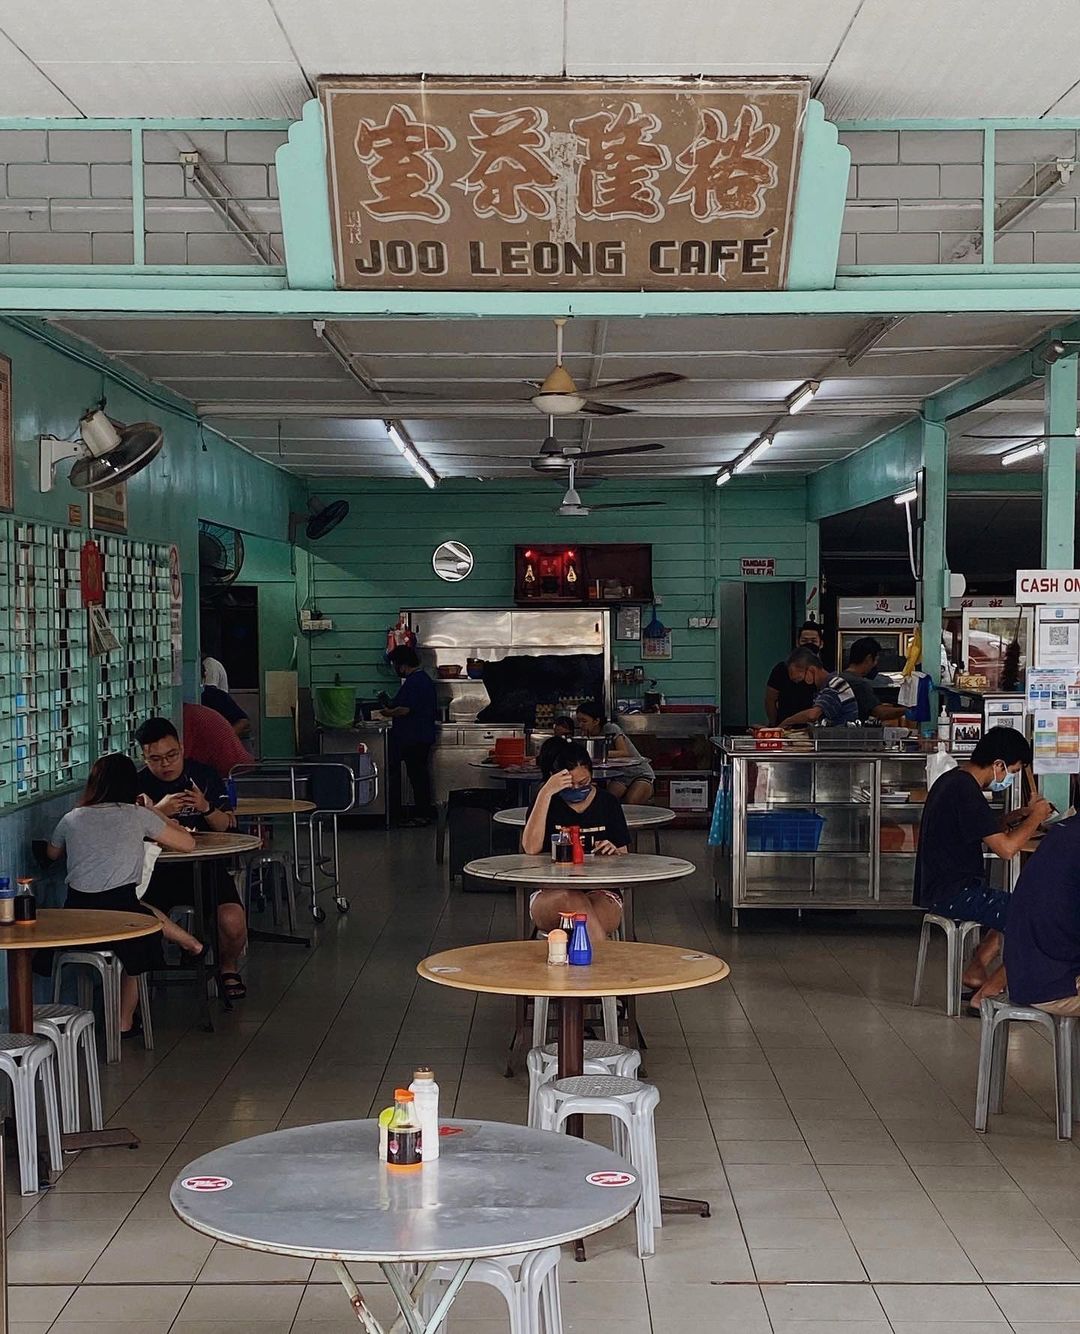 Breakfast in Penang - joo leong shop